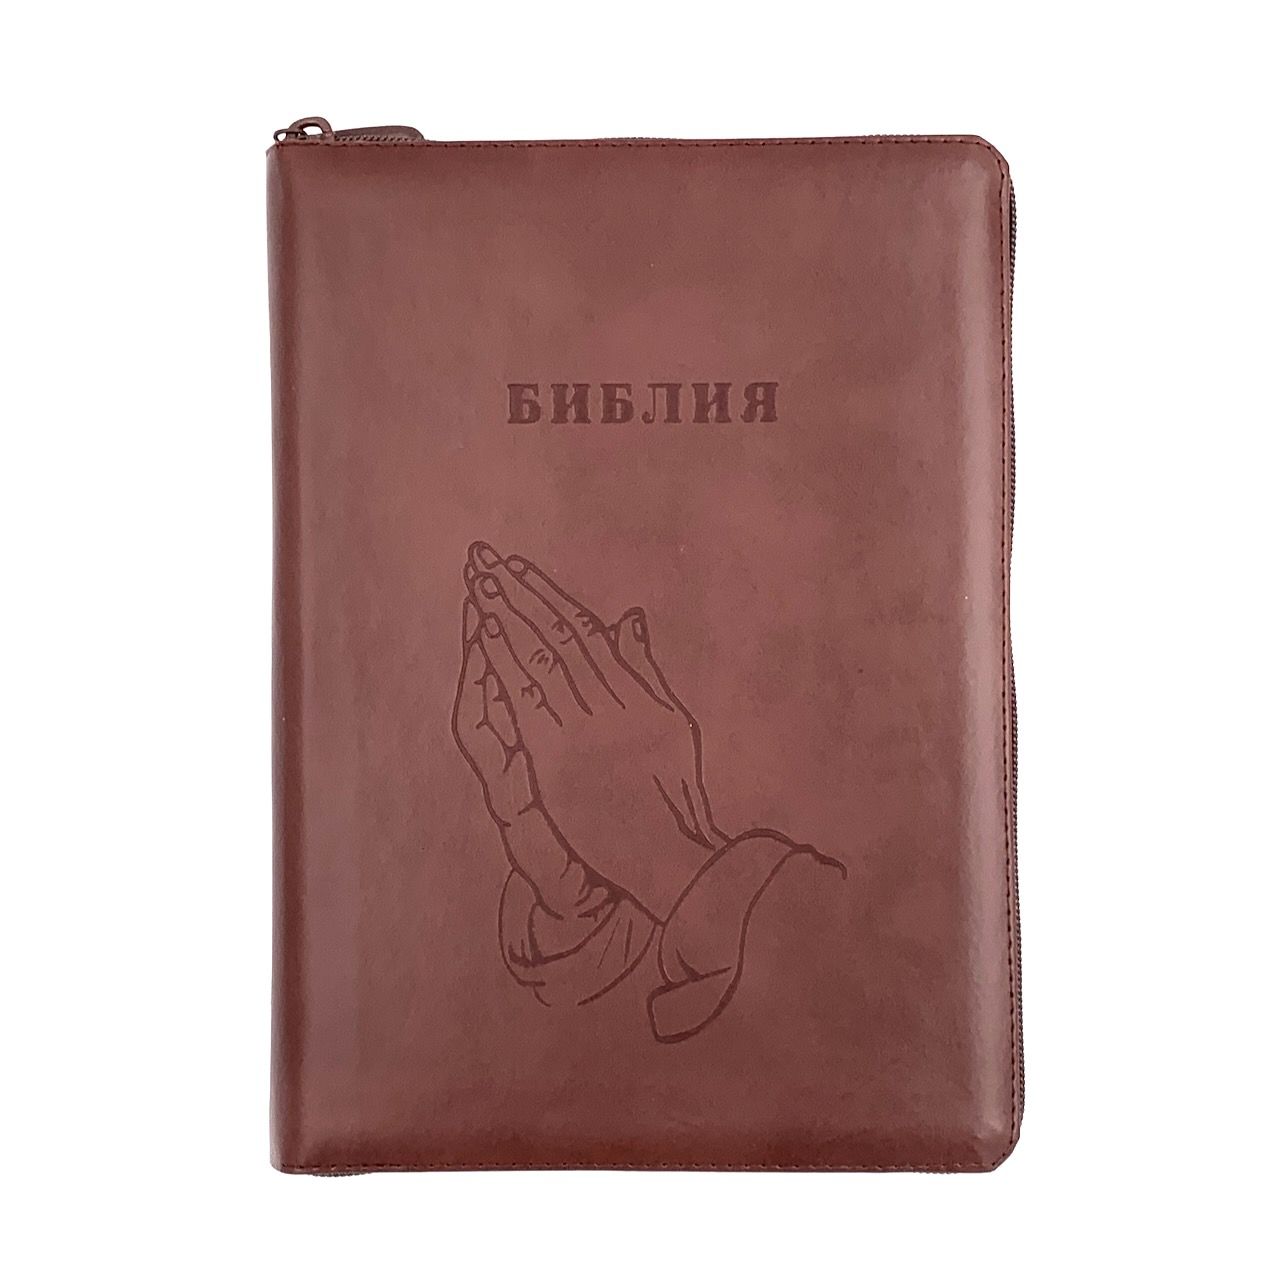 Библия 076zti код 23076-20, дизайн "термо штамп руки молящегося", кожаный переплет на молнии с индексами, цвет коричневый, размер 180x243 мм